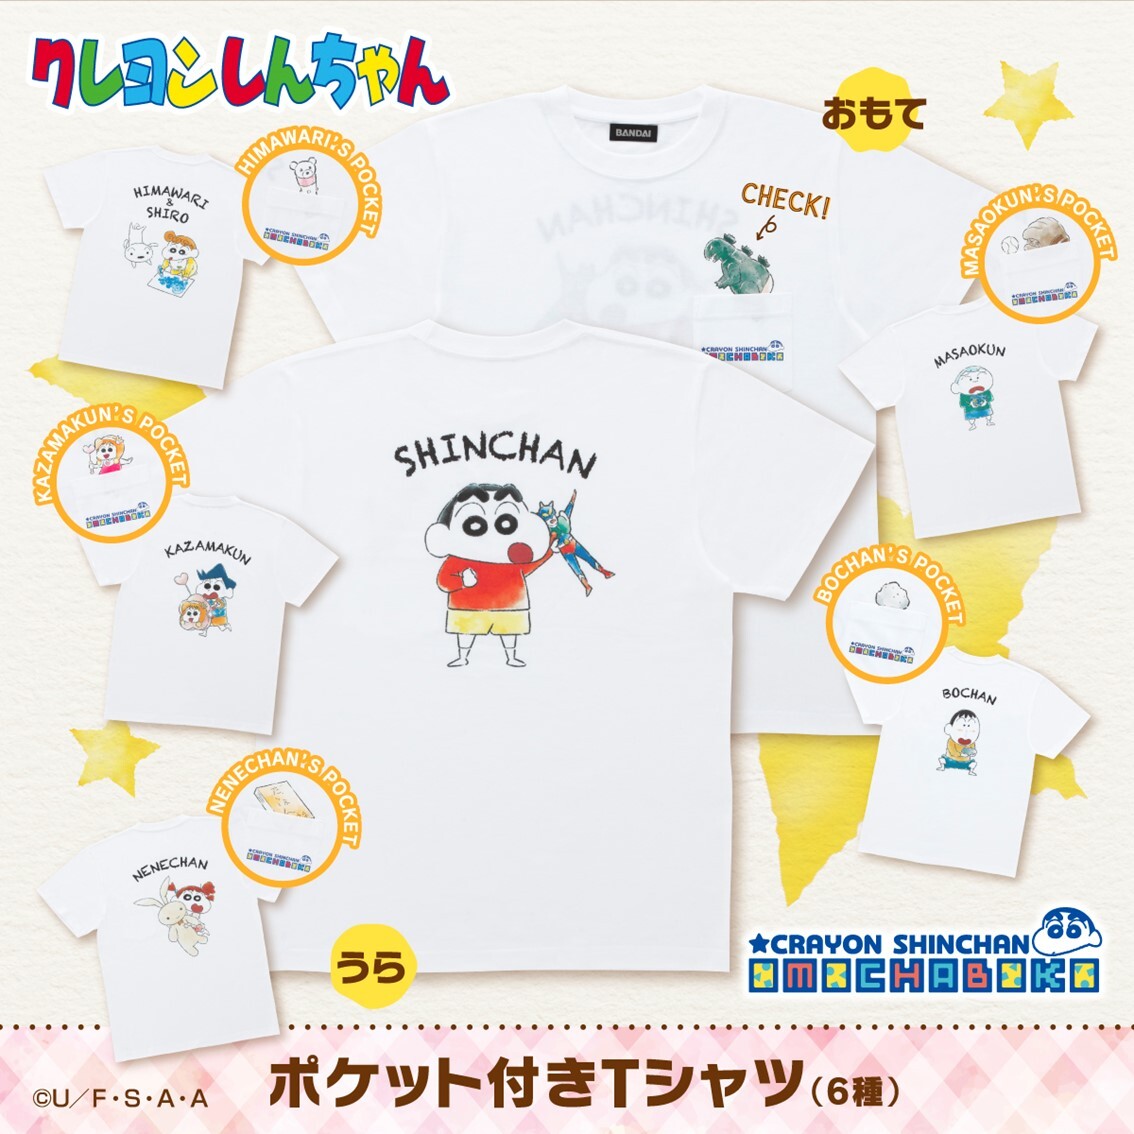 クレヨンしんちゃん 大人向けアパレル omochaboko シリーズが誕生 描きおろしイラストが配されたtシャツやパーカーなど全6種 株式会社bandai spirits ネット戦略室のプレスリリース